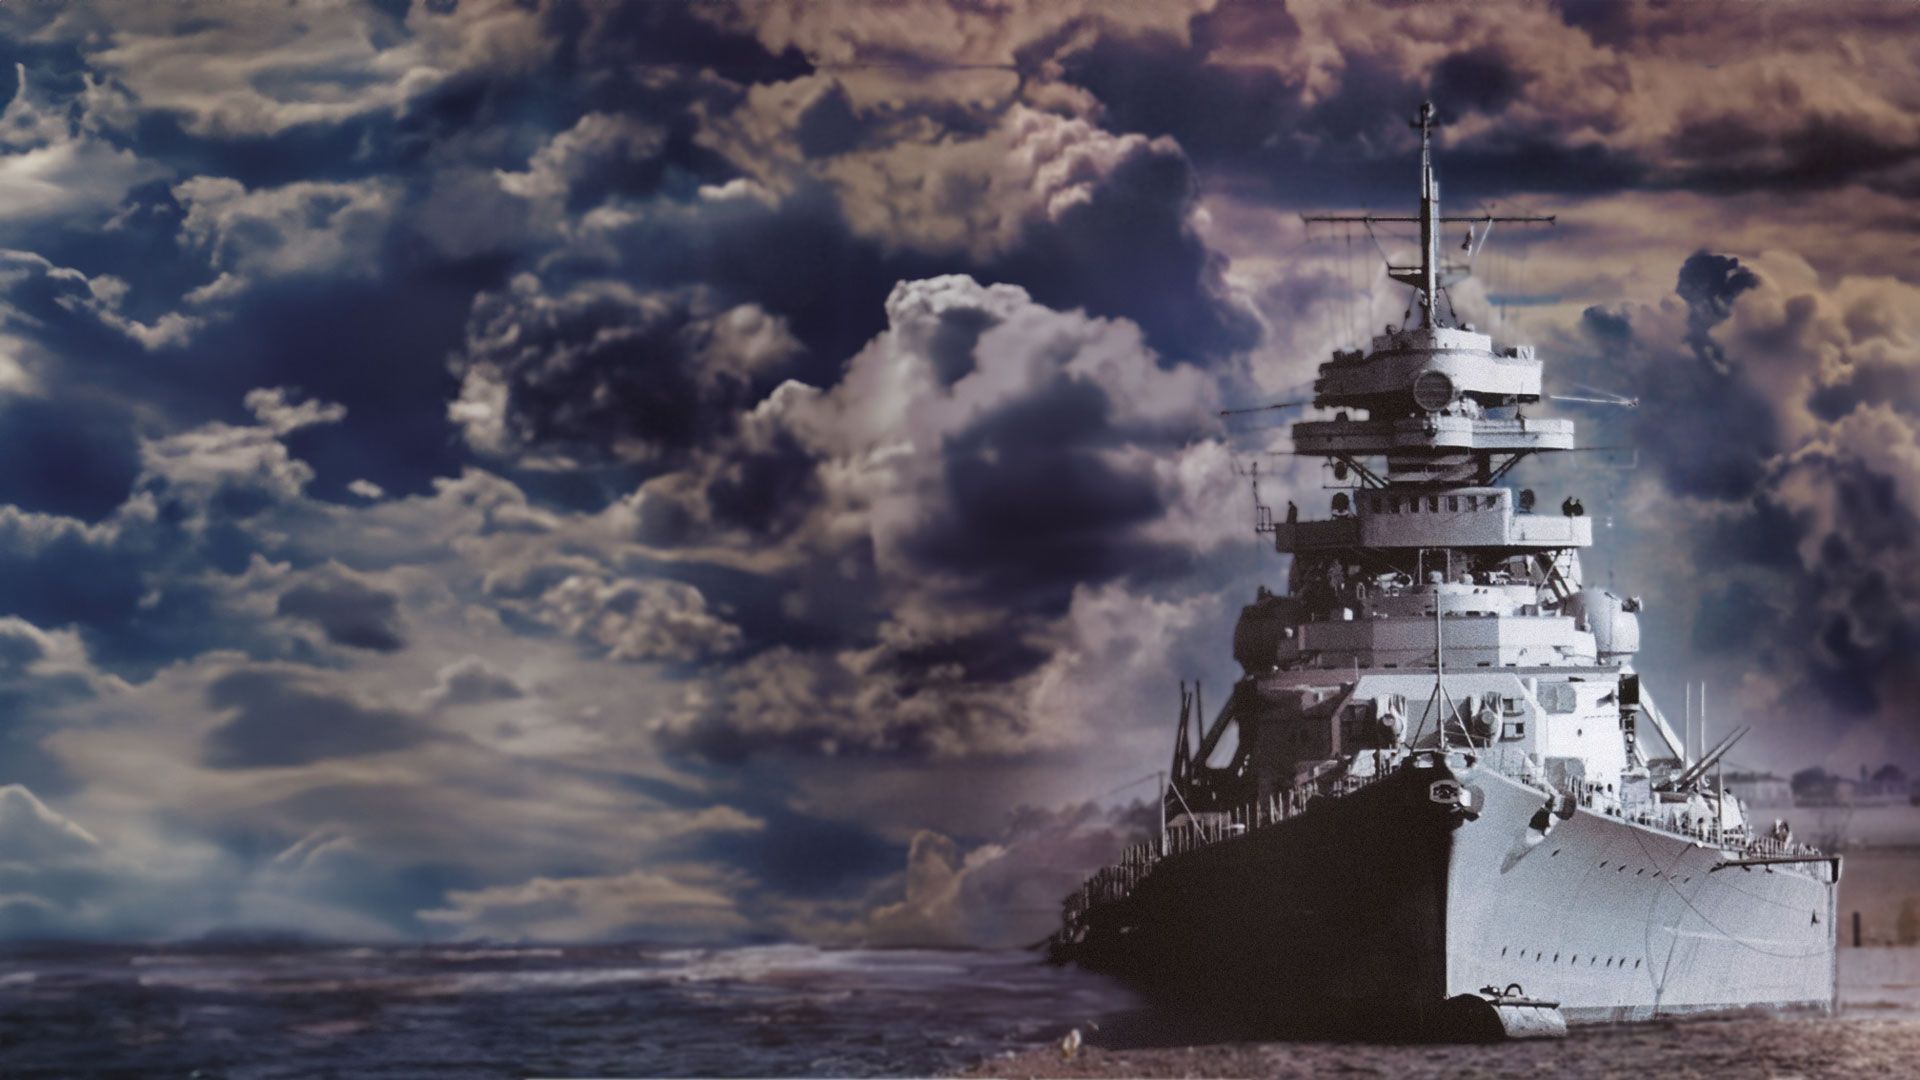 Der Untergang der Bismarck